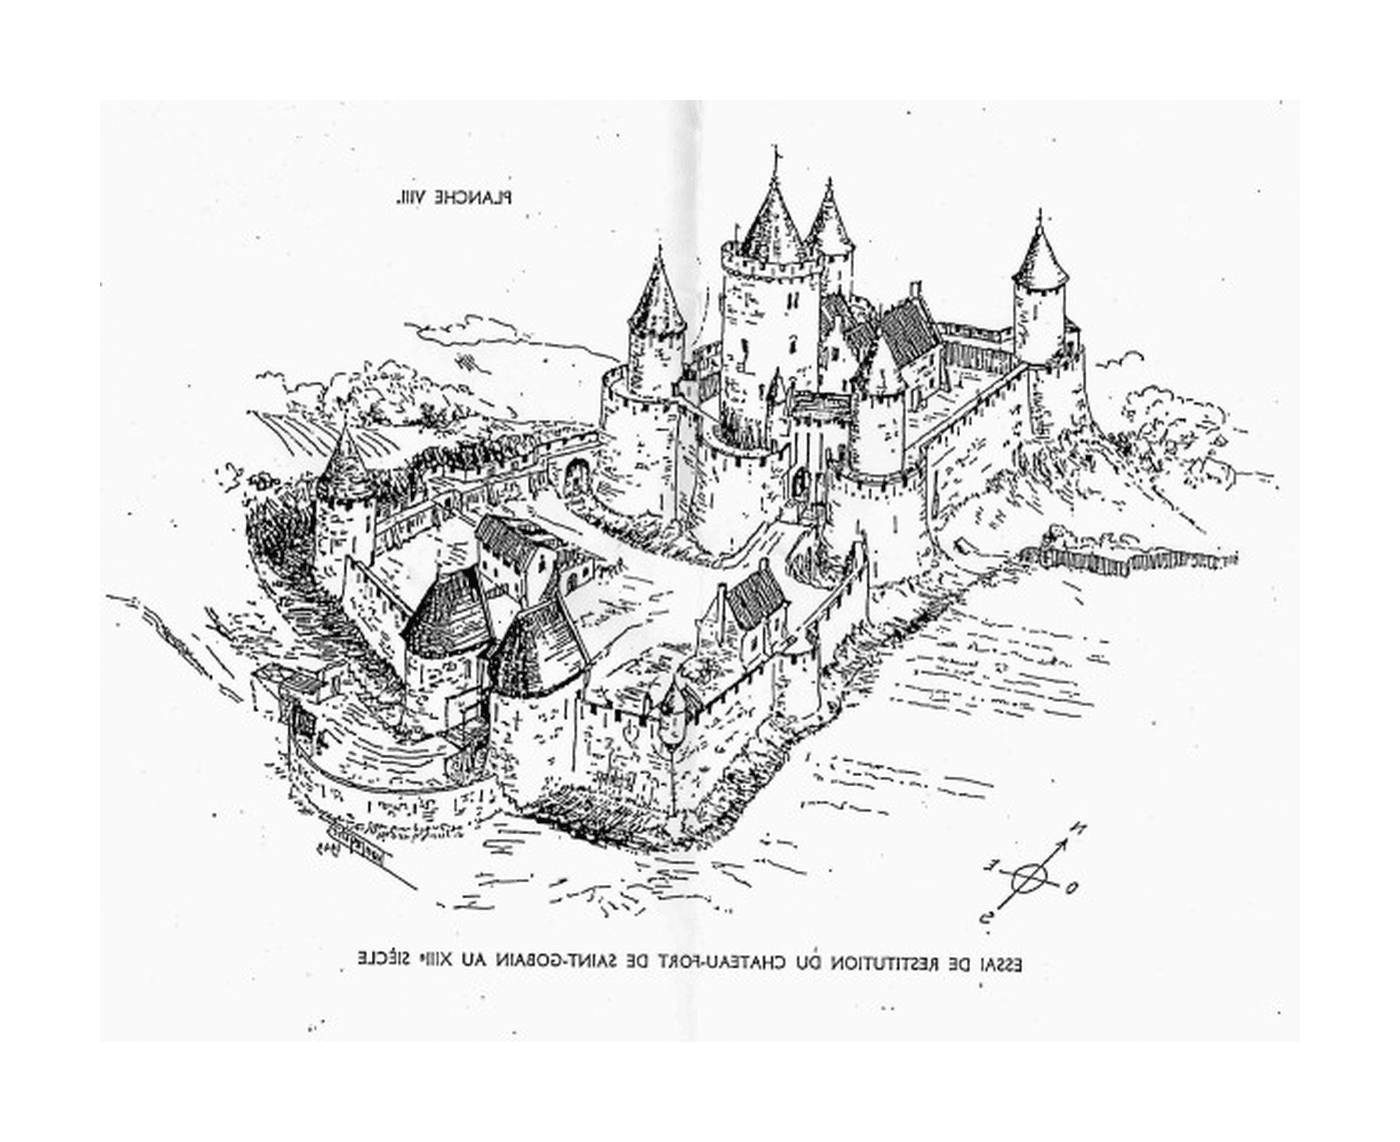  Eine Burg des Mittelalters, befindet sich im 14. Jahrhundert in Saint-Gobain 